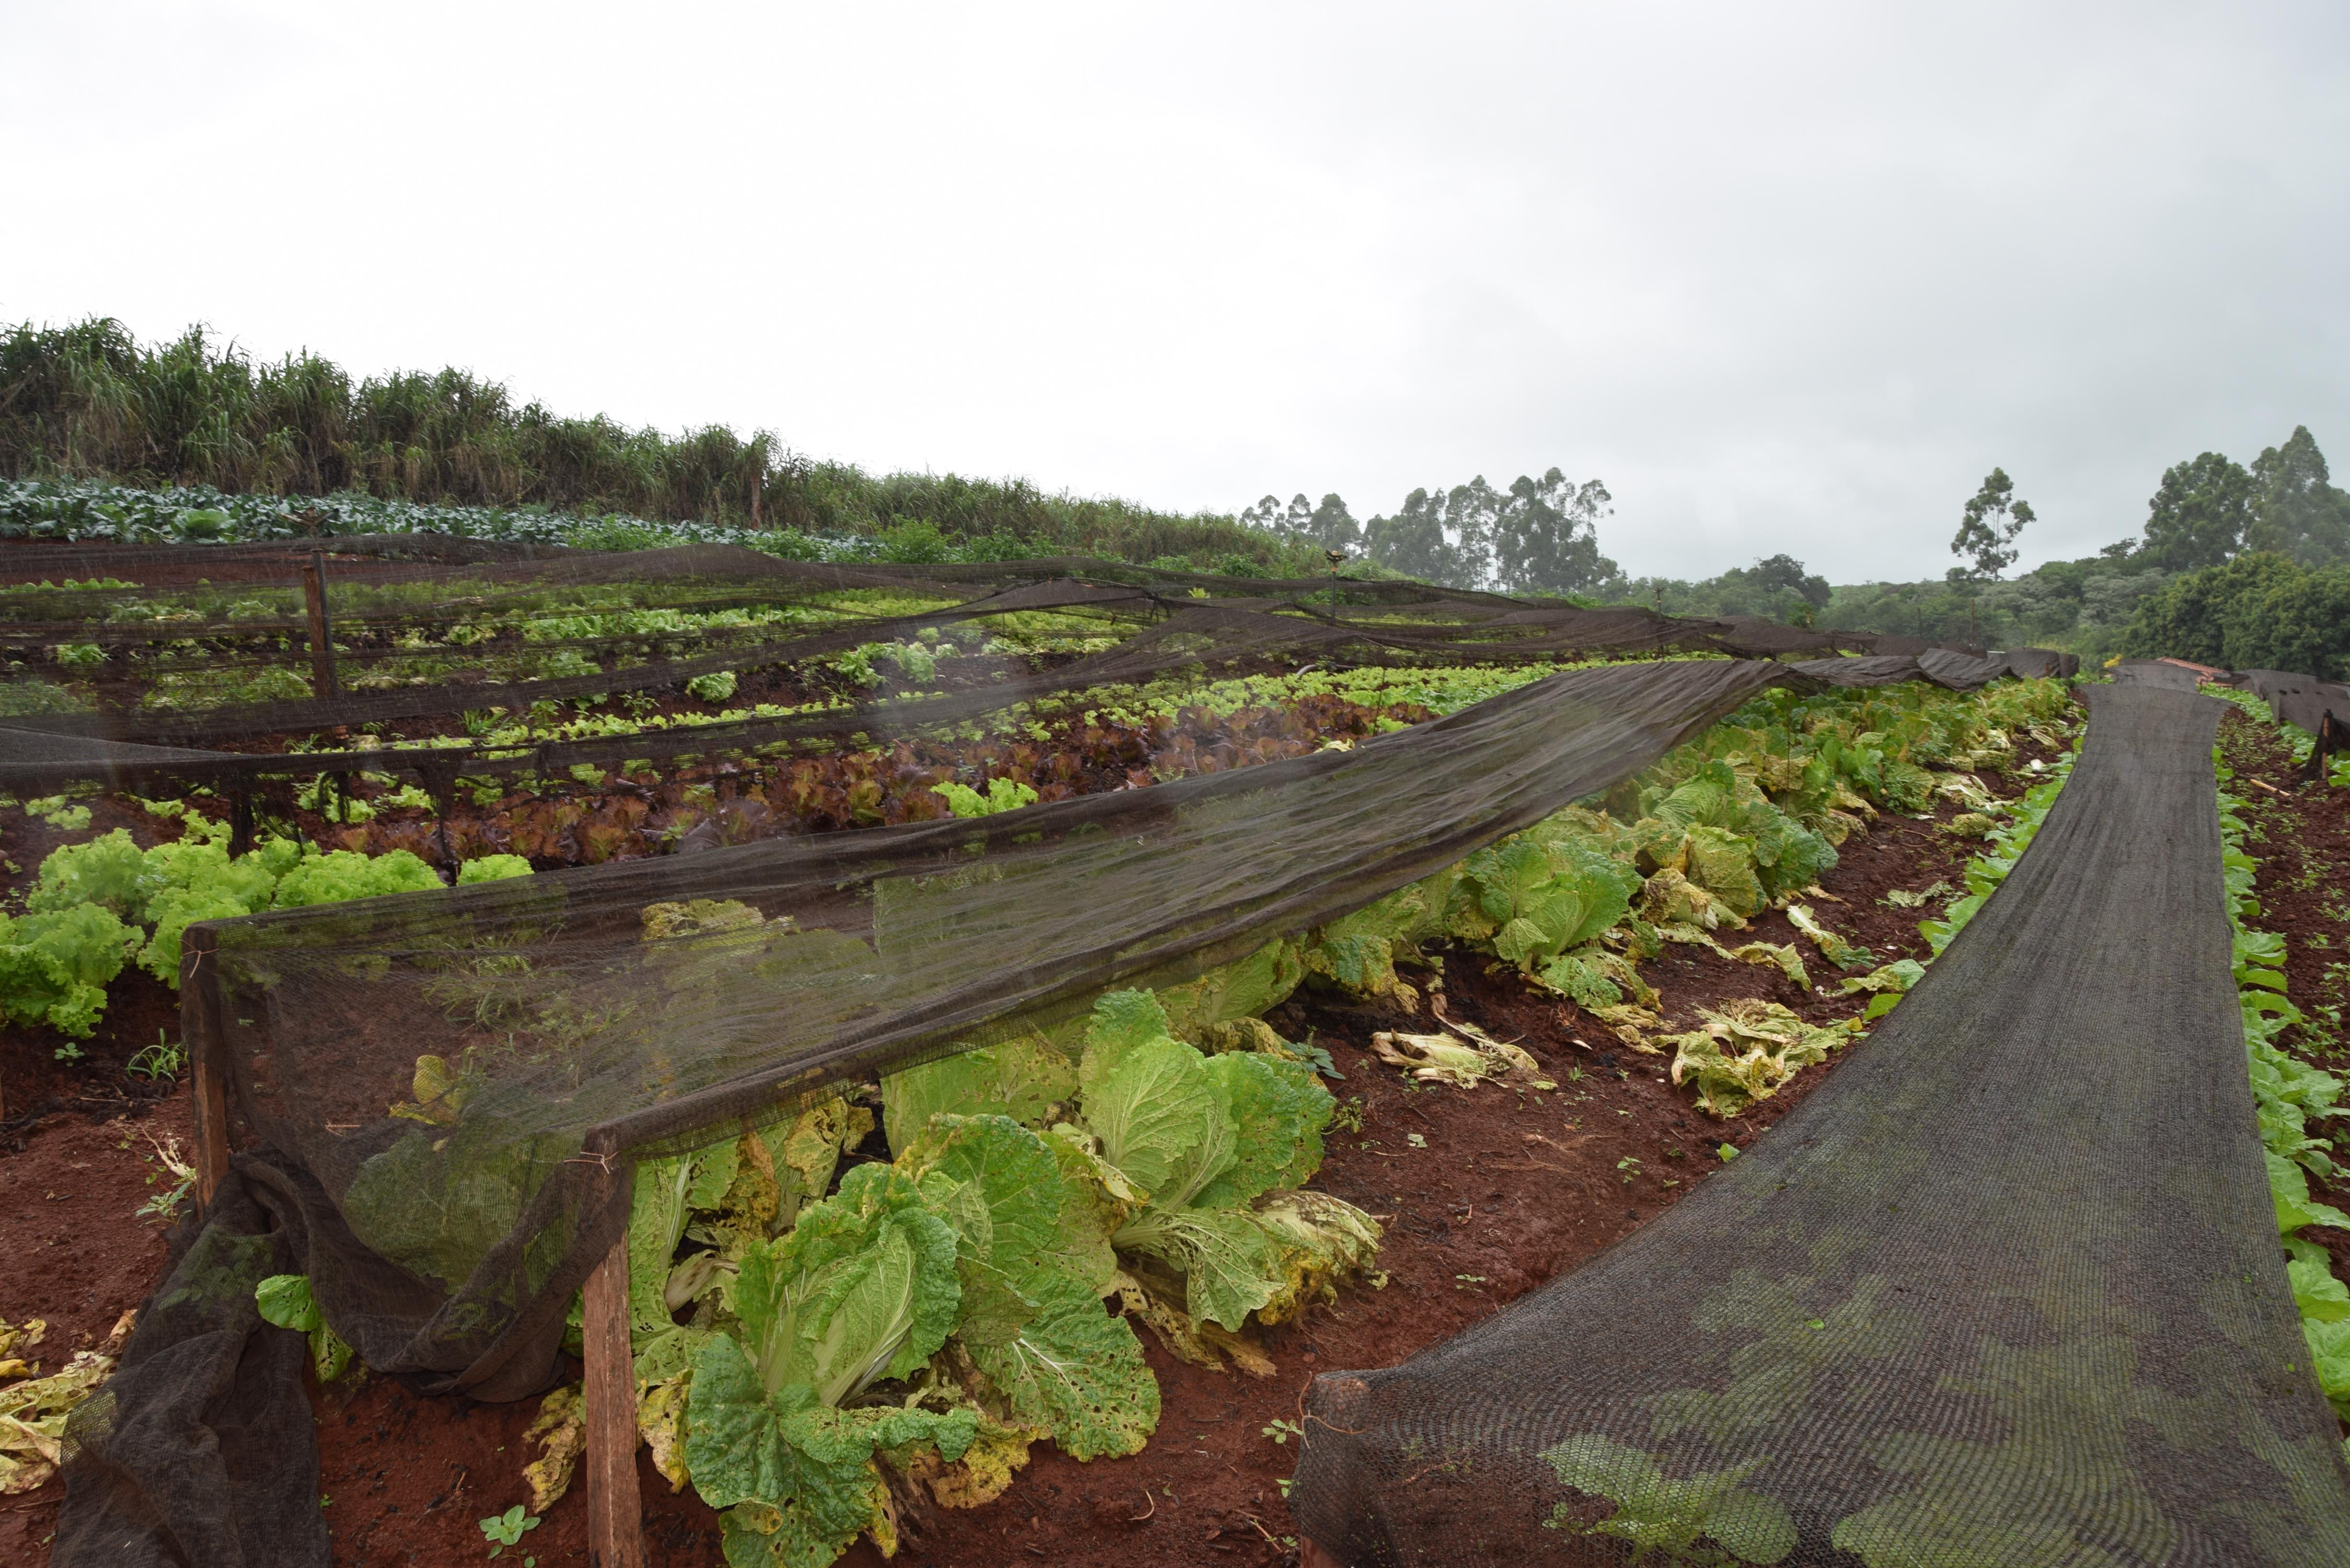 Alta umidade do solo faz com que vegetais apodreçam antes de ser colhidos, além de impedir novos plantios - Foto: Ivan Maldonado